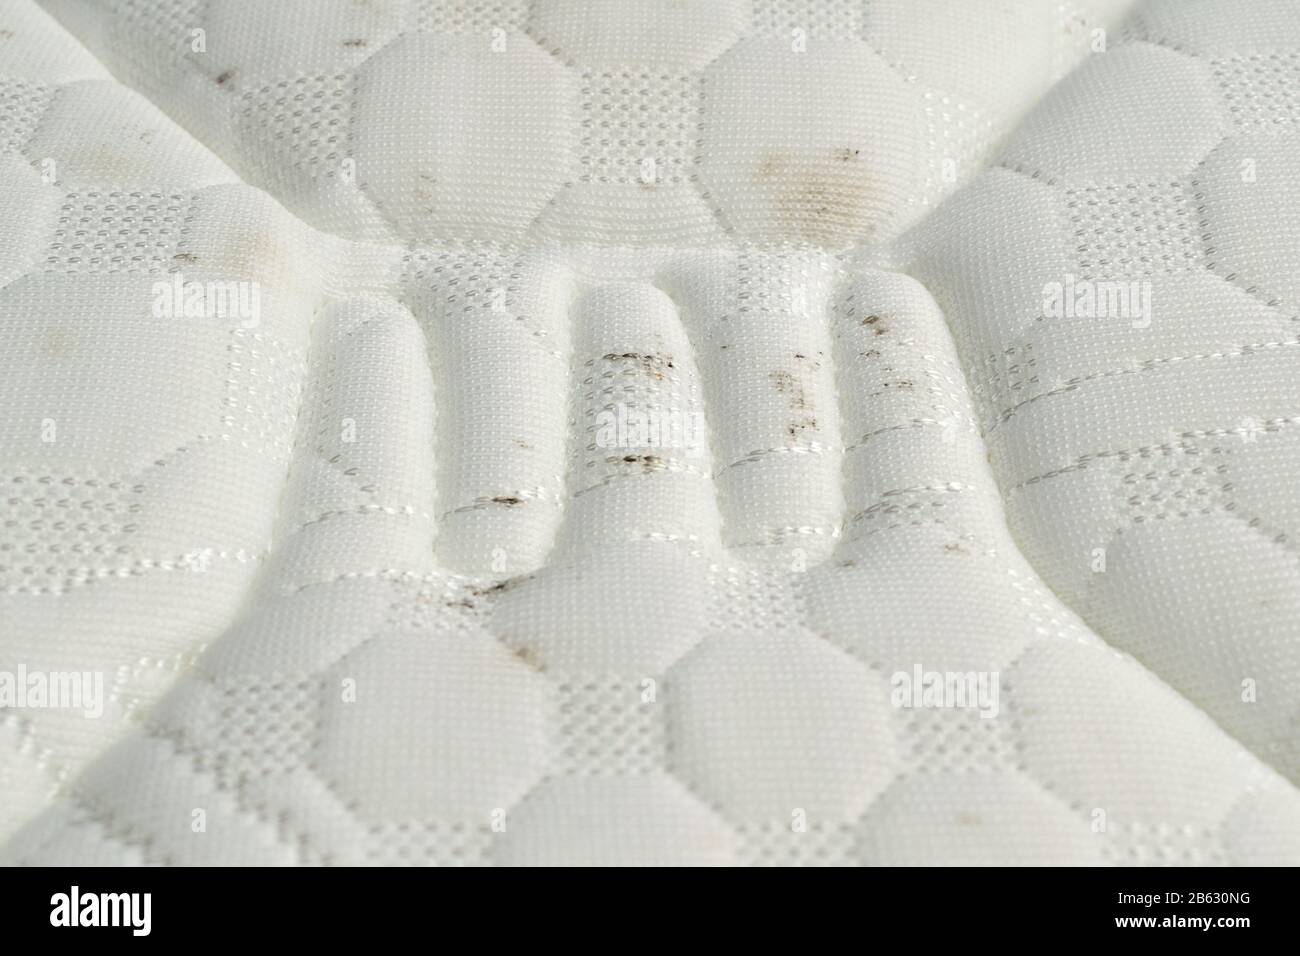 Schimmel auf einer Matratze. Schwarze Flecken auf weißem Stoff  Stockfotografie - Alamy